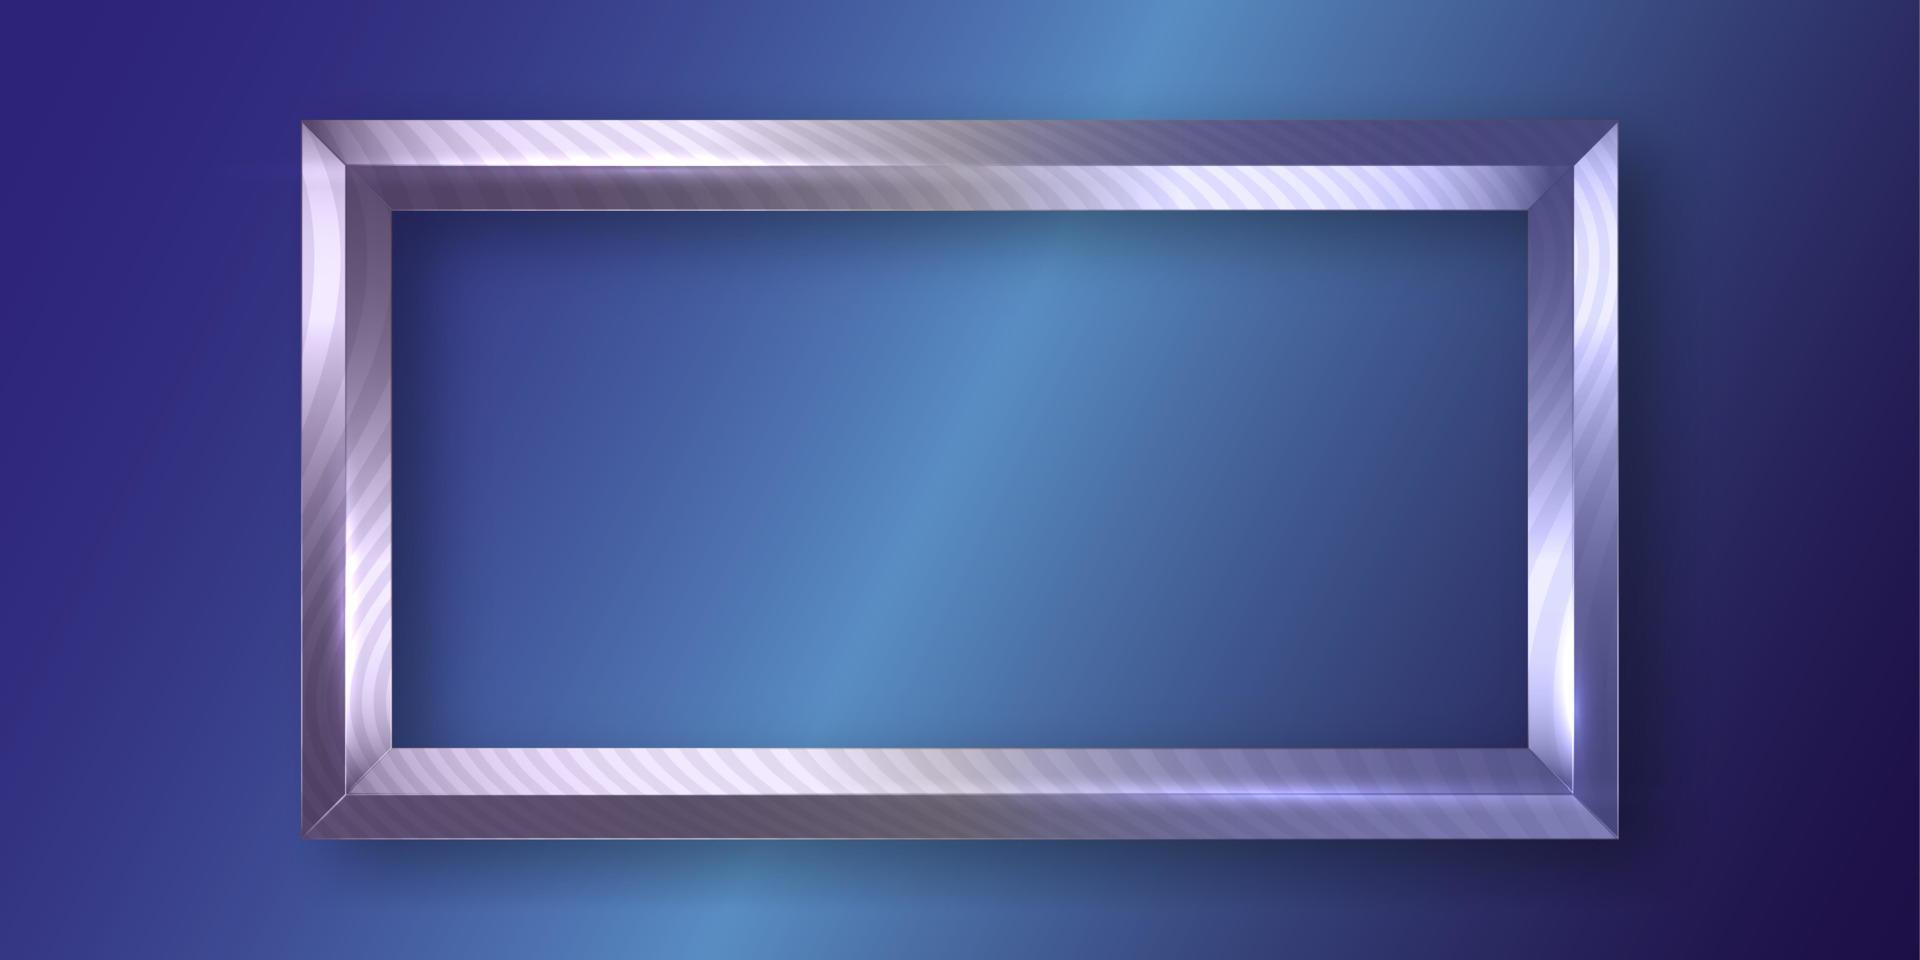 rektangel ram i förgyllda trä, randig utsmyckad metallisk vit guld bild ram, klassisk silver- lyx gräns vektor illustration isolerat på blå bakgrund